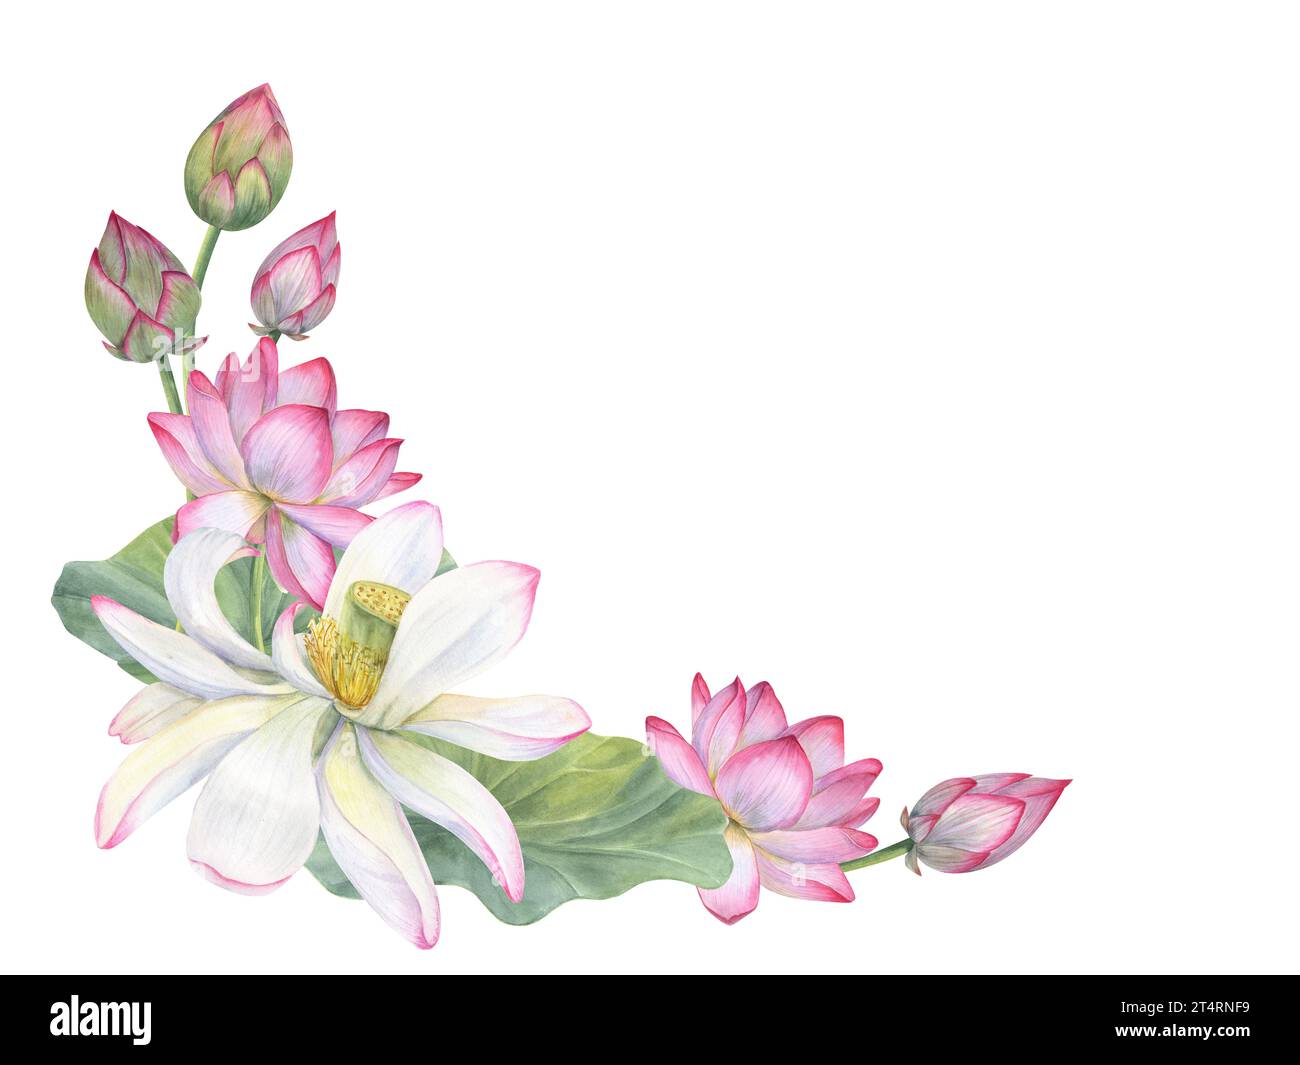 Rahmen aus blühenden Lotusblüten, Knospen, Blättern. Weiße und rosafarbene Seerosen, indischer Lotus, grünes Blatt, Knospen. Leerzeichen für Text. Aquarellabbildung Stockfoto